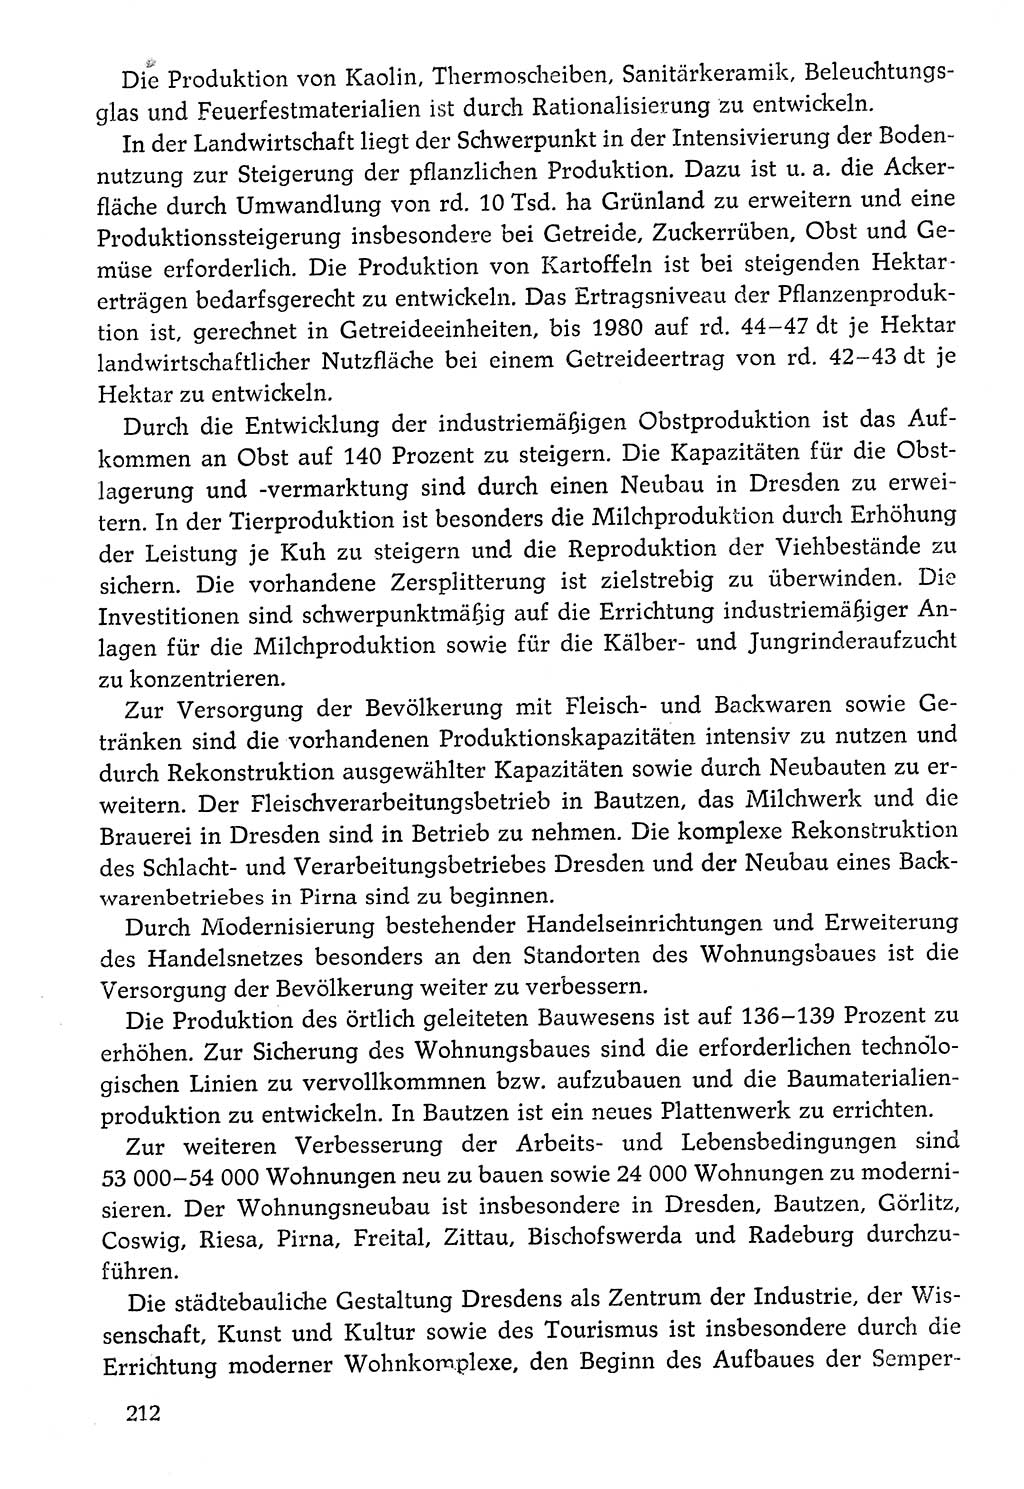 Dokumente der Sozialistischen Einheitspartei Deutschlands (SED) [Deutsche Demokratische Republik (DDR)] 1976-1977, Seite 212 (Dok. SED DDR 1976-1977, S. 212)